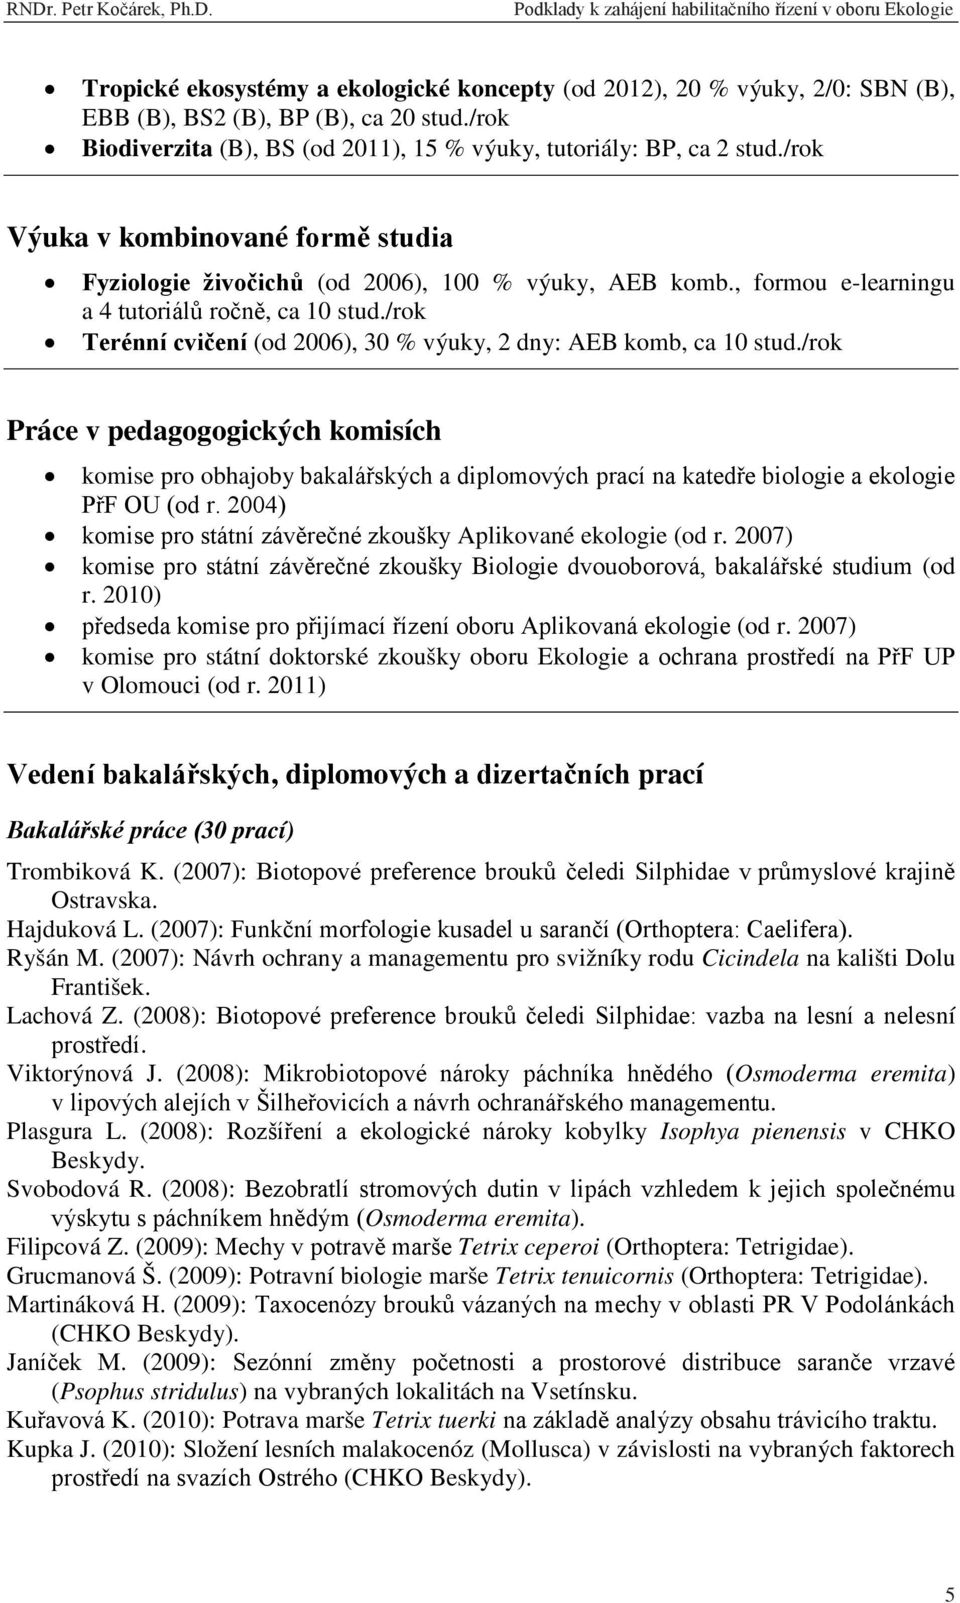 Podklady k zahájení habilitačního řízení v oboru Ekologie. RNDr. Petra  Kočárka, Ph.D. - PDF Free Download